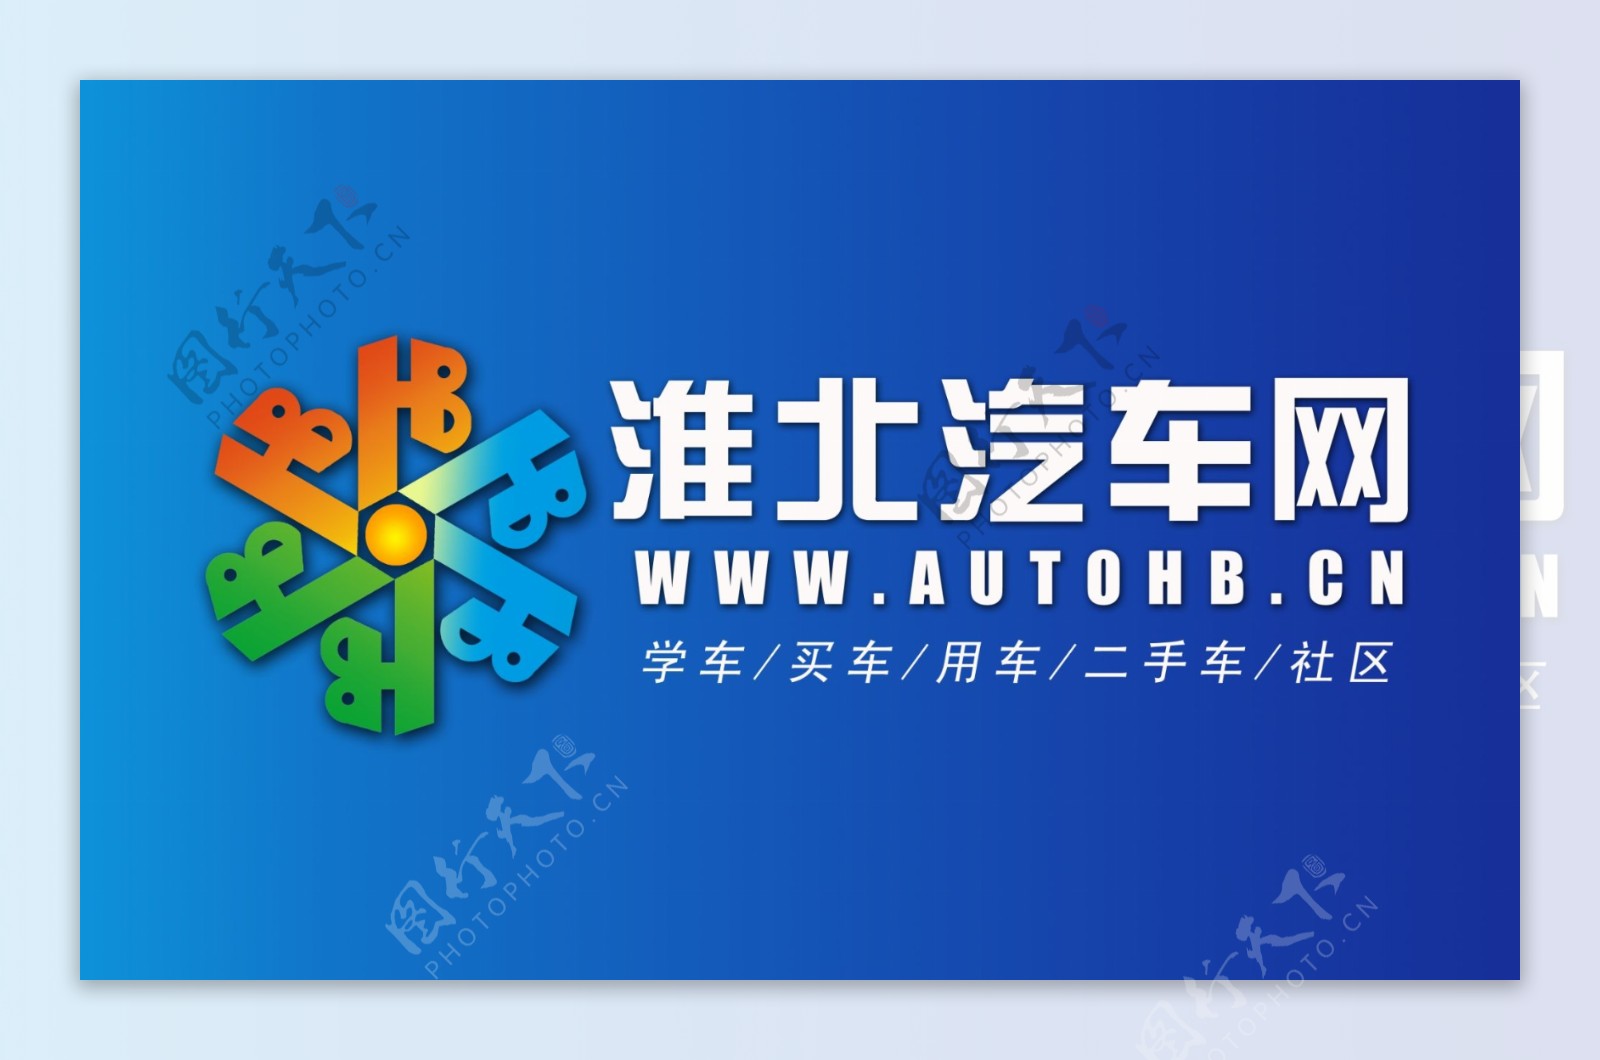 淮北汽车协会logo图片